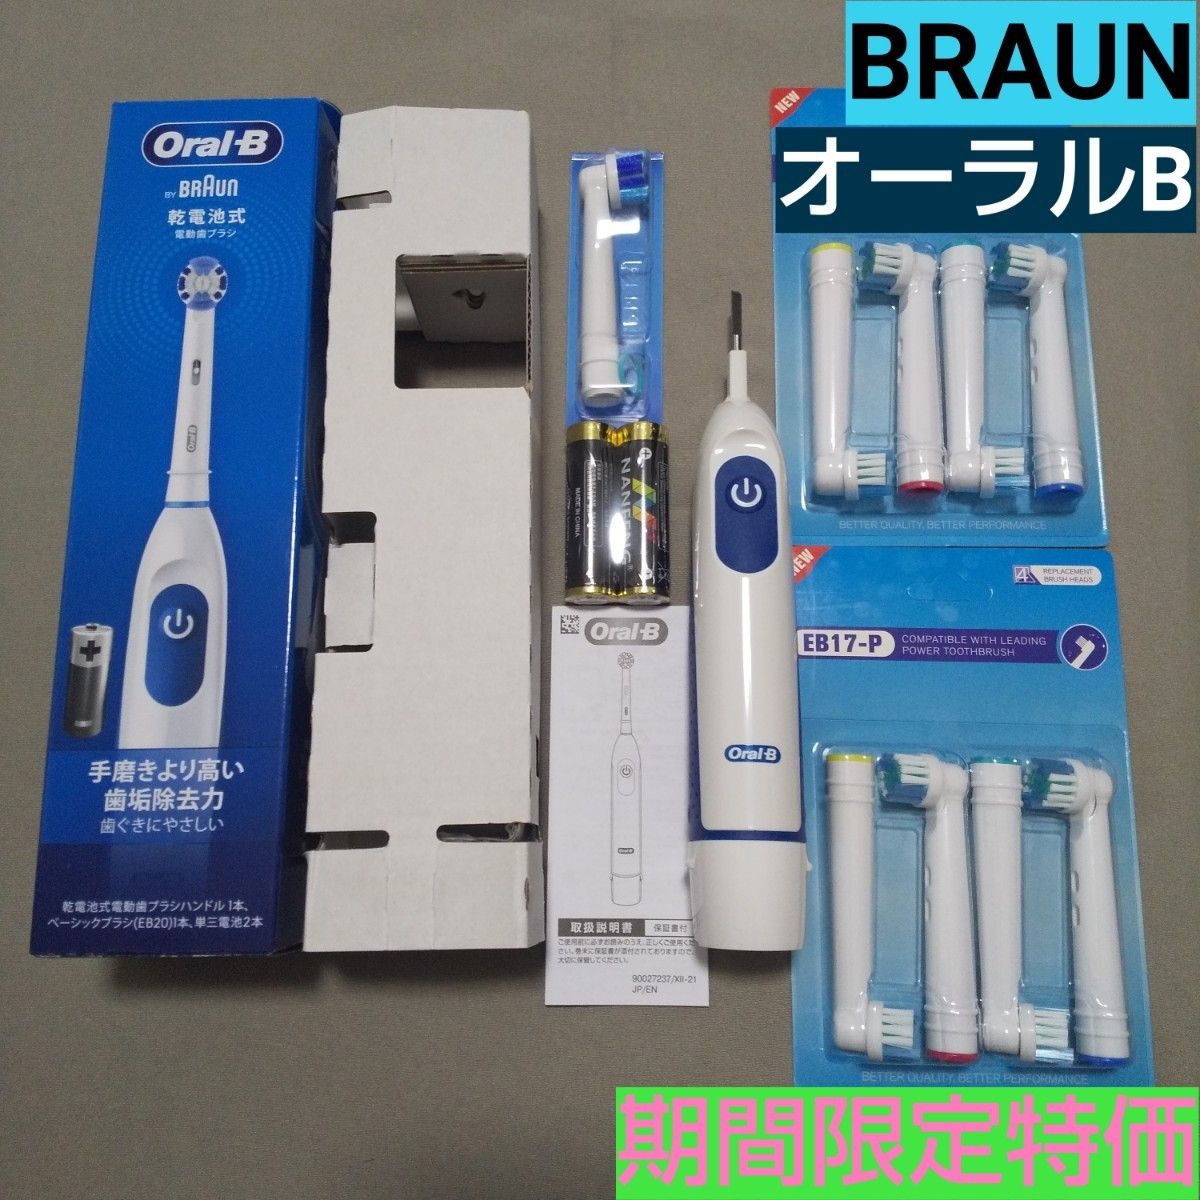 ブラウン オーラルB 電動歯ブラシ DB5010Nと互換ブラシ2セット #